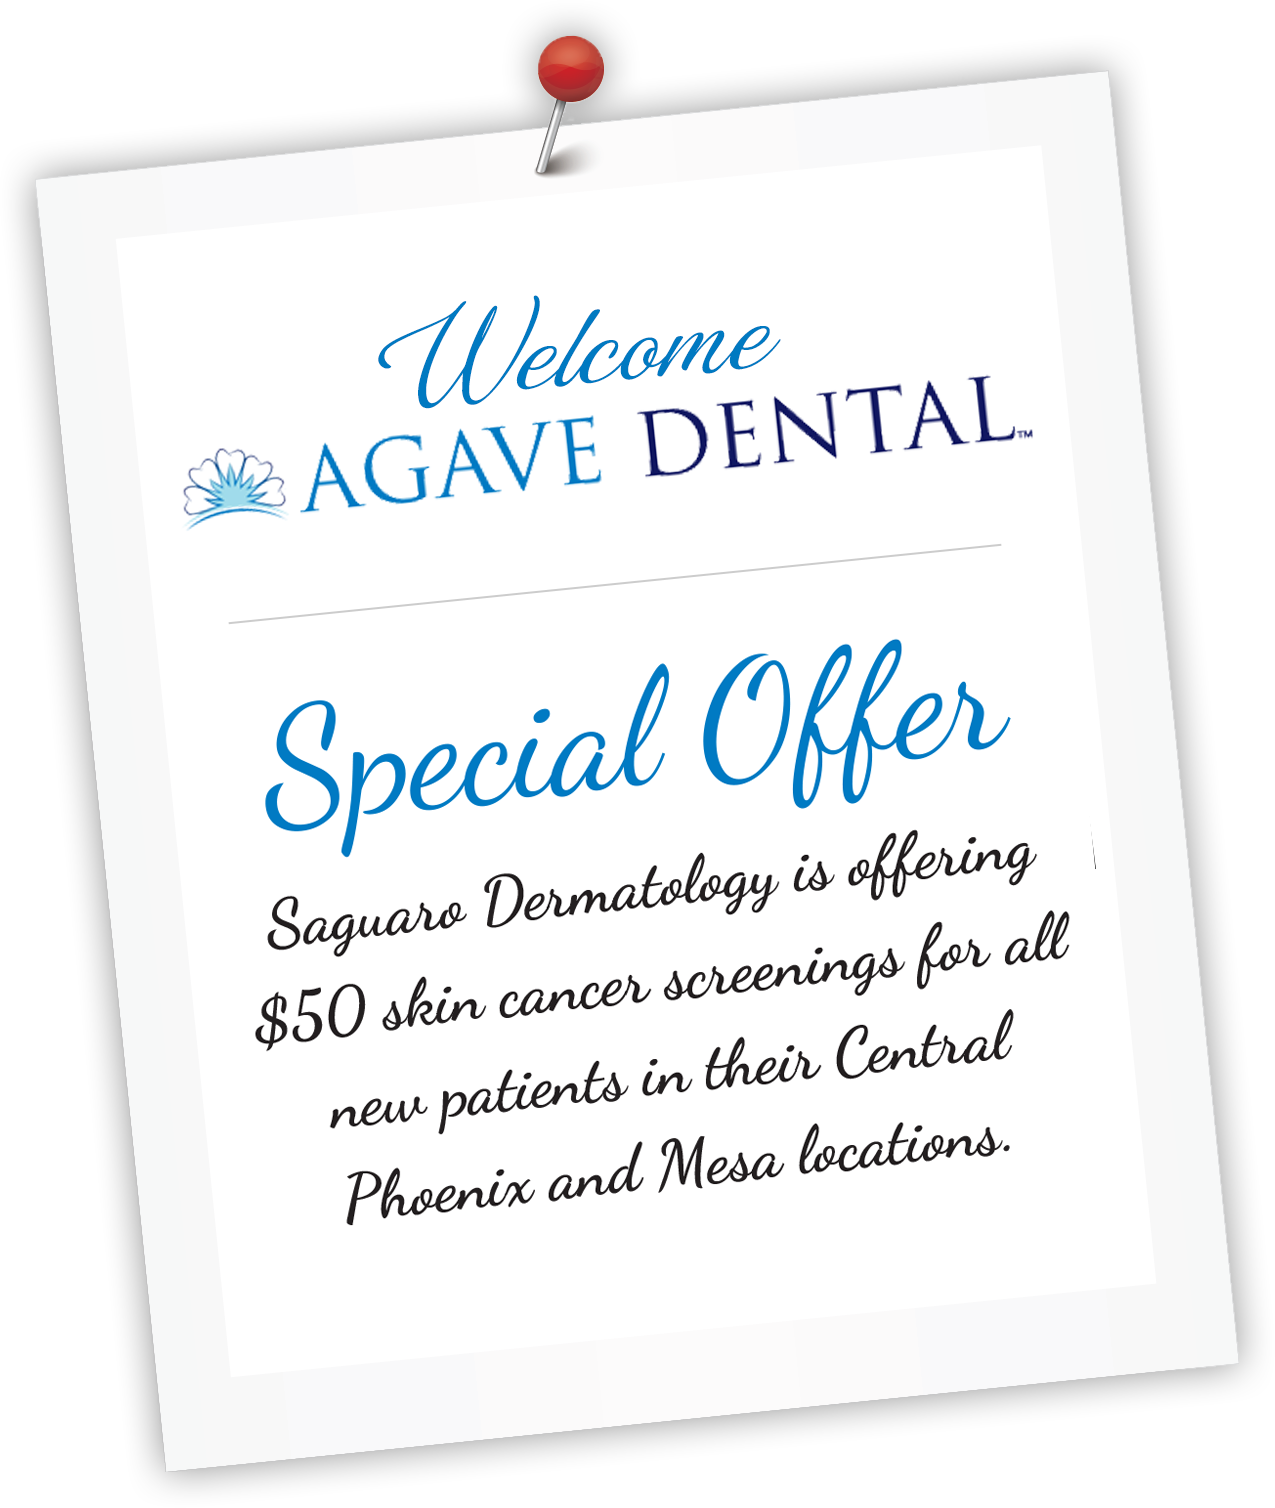 Agave Dental Special Offer